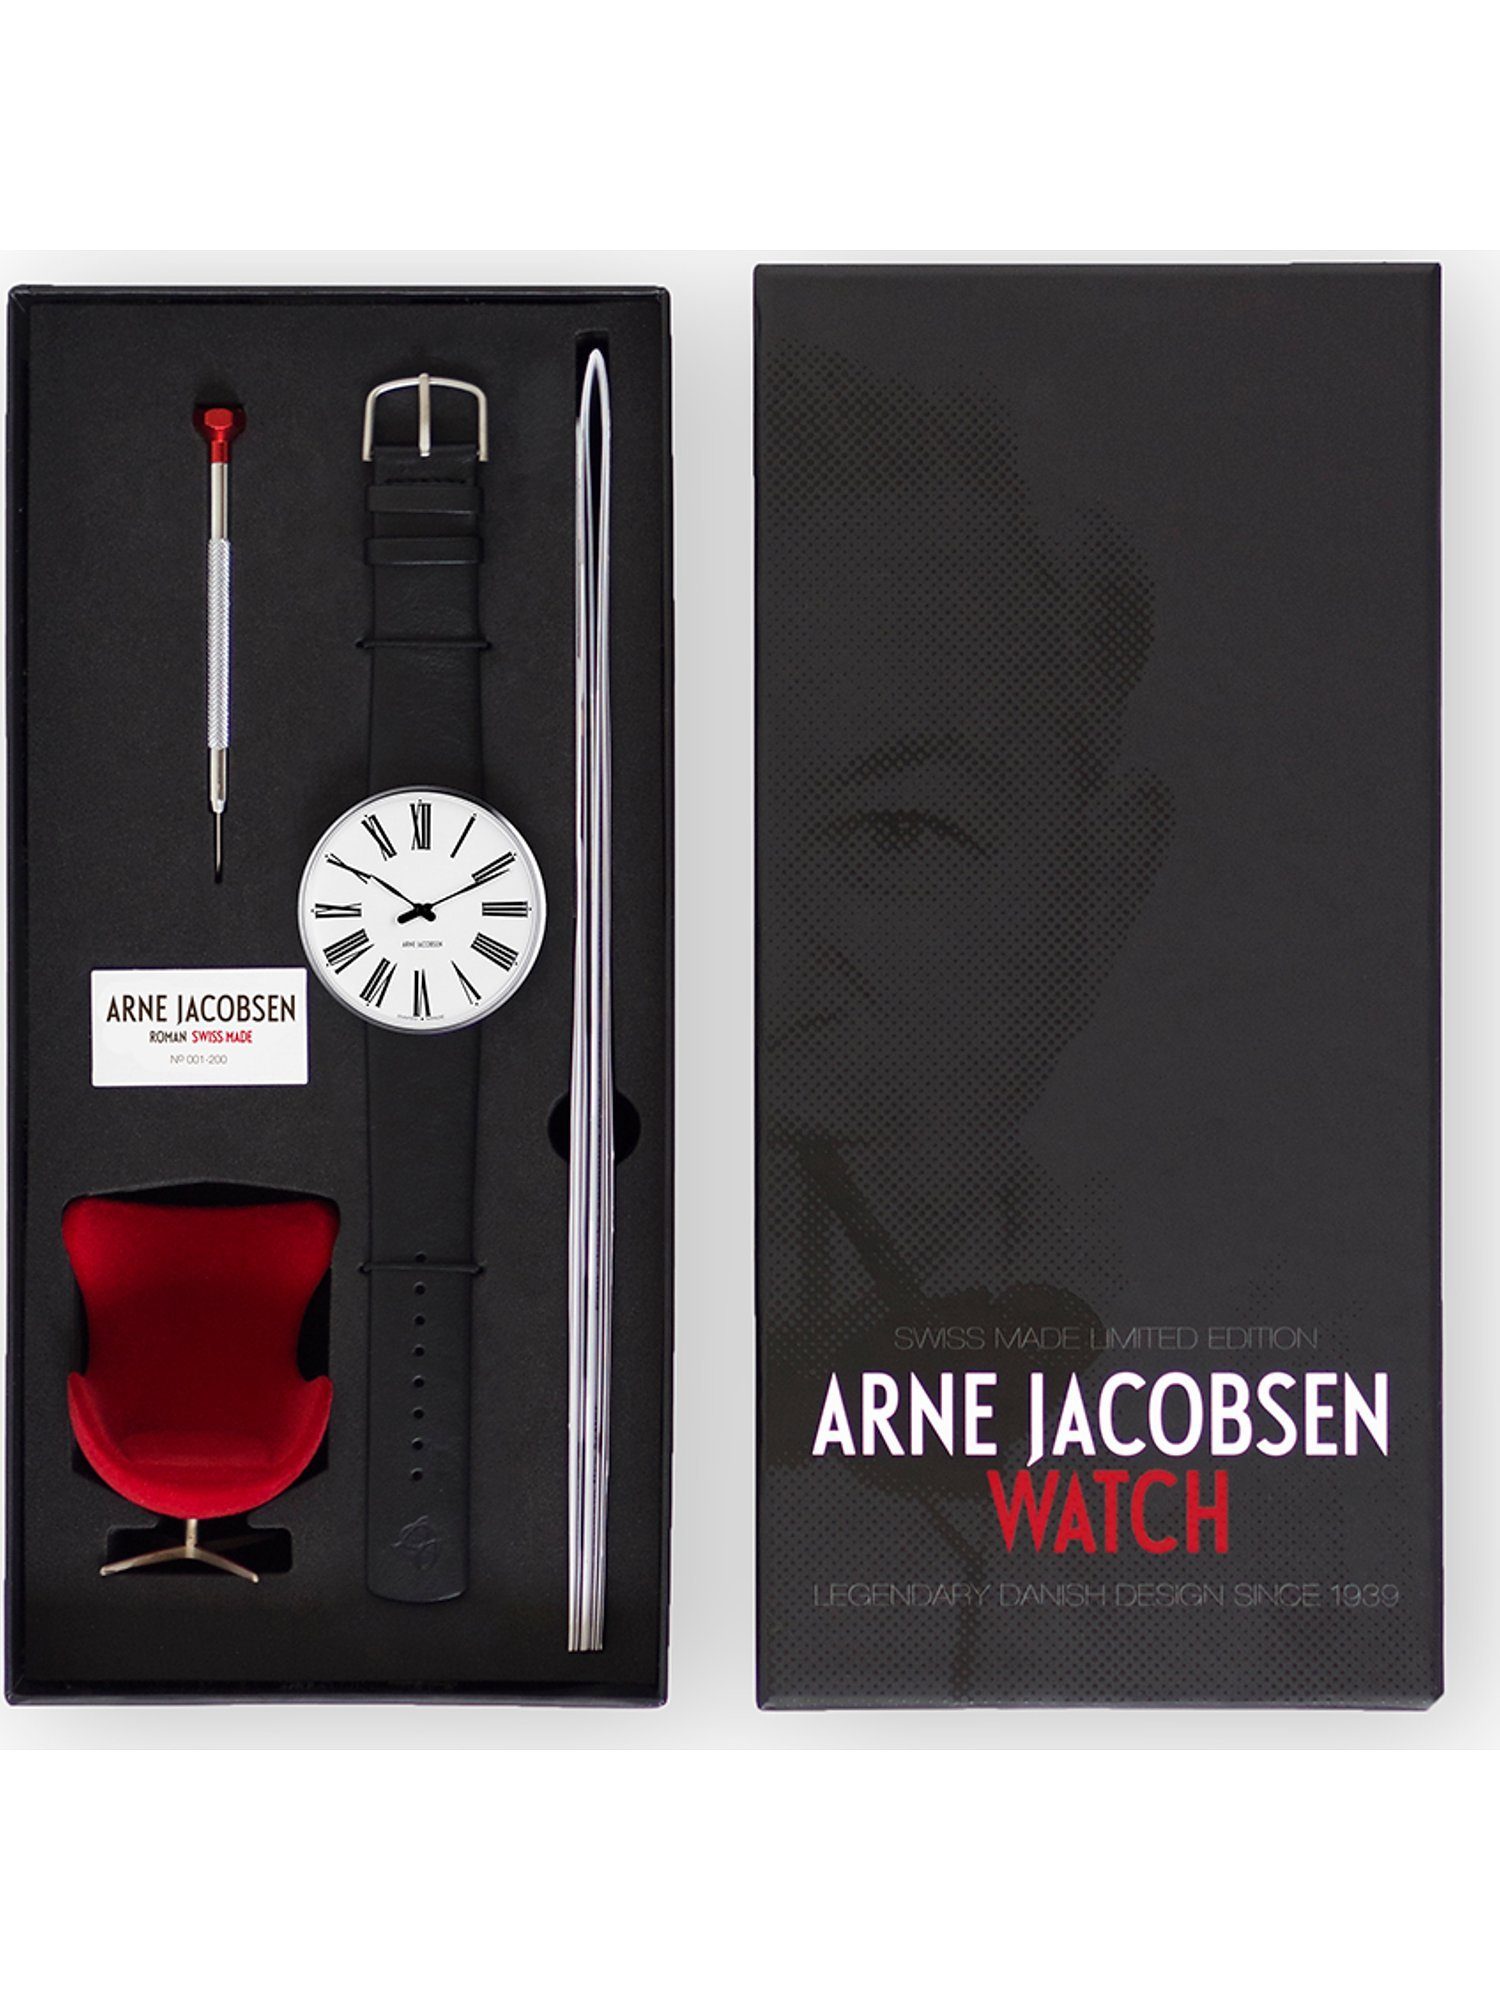 Herren Uhren Arne Jacobsen Quarzuhr Arne Jacobsen Unisex-Uhren Analog Quarz, Klassikuhr